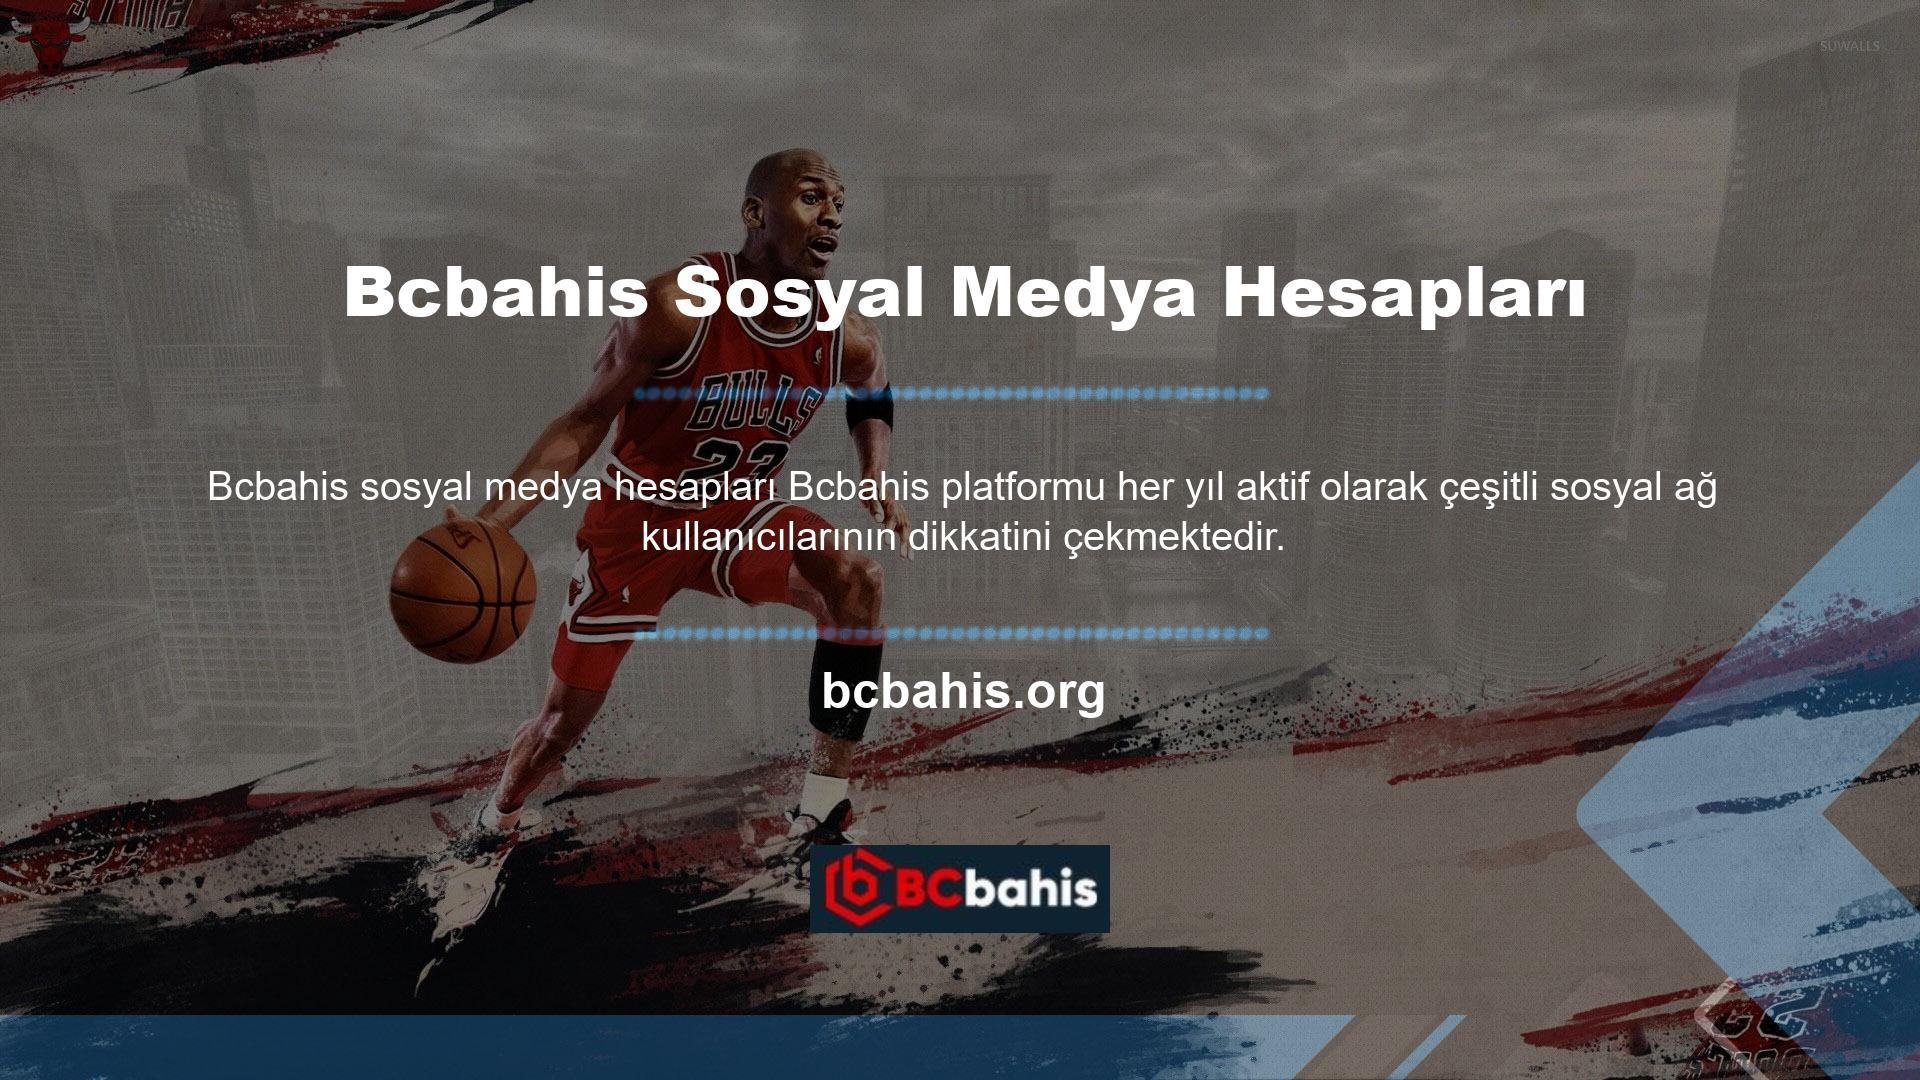 Bcbahis sosyal medya hesaplarına bahis forumları ve resmi web siteleri aracılığıyla ulaşılabilir